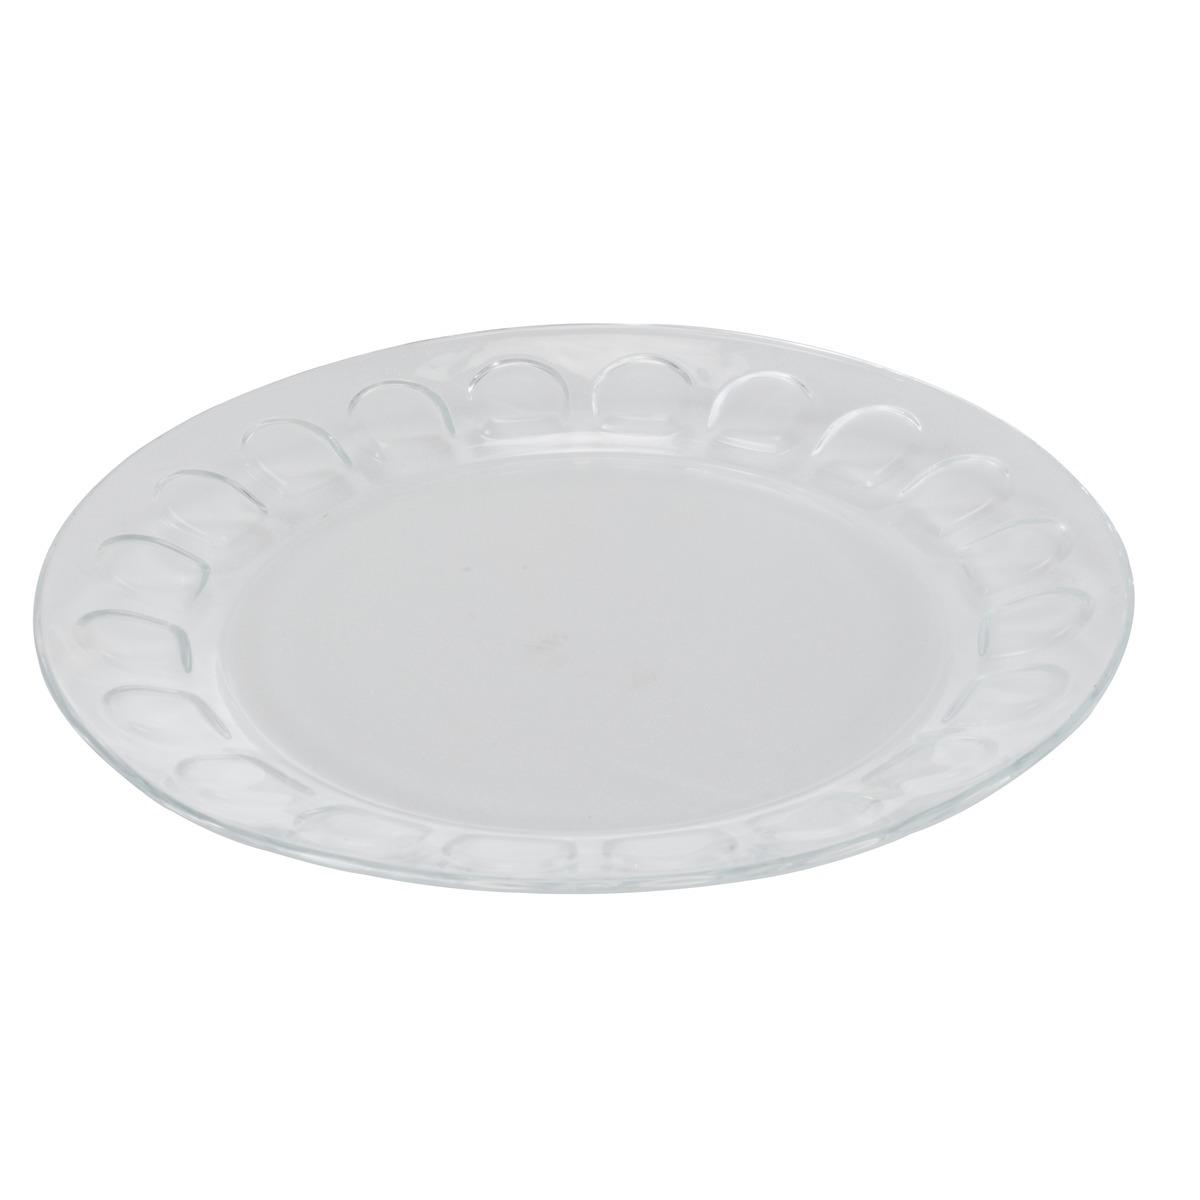 Assiette ronde en verre - Diamètre 23 cm - Blanc transparent